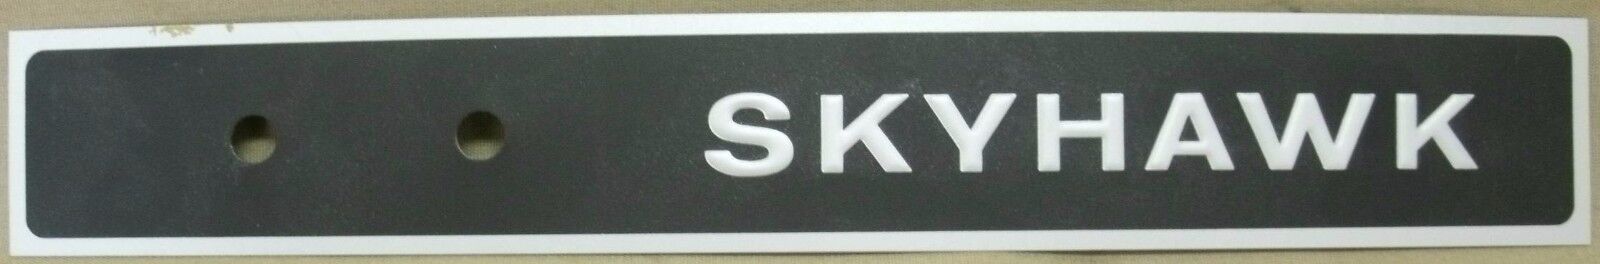 Cessna - Skyhawk - Emblem / Placard